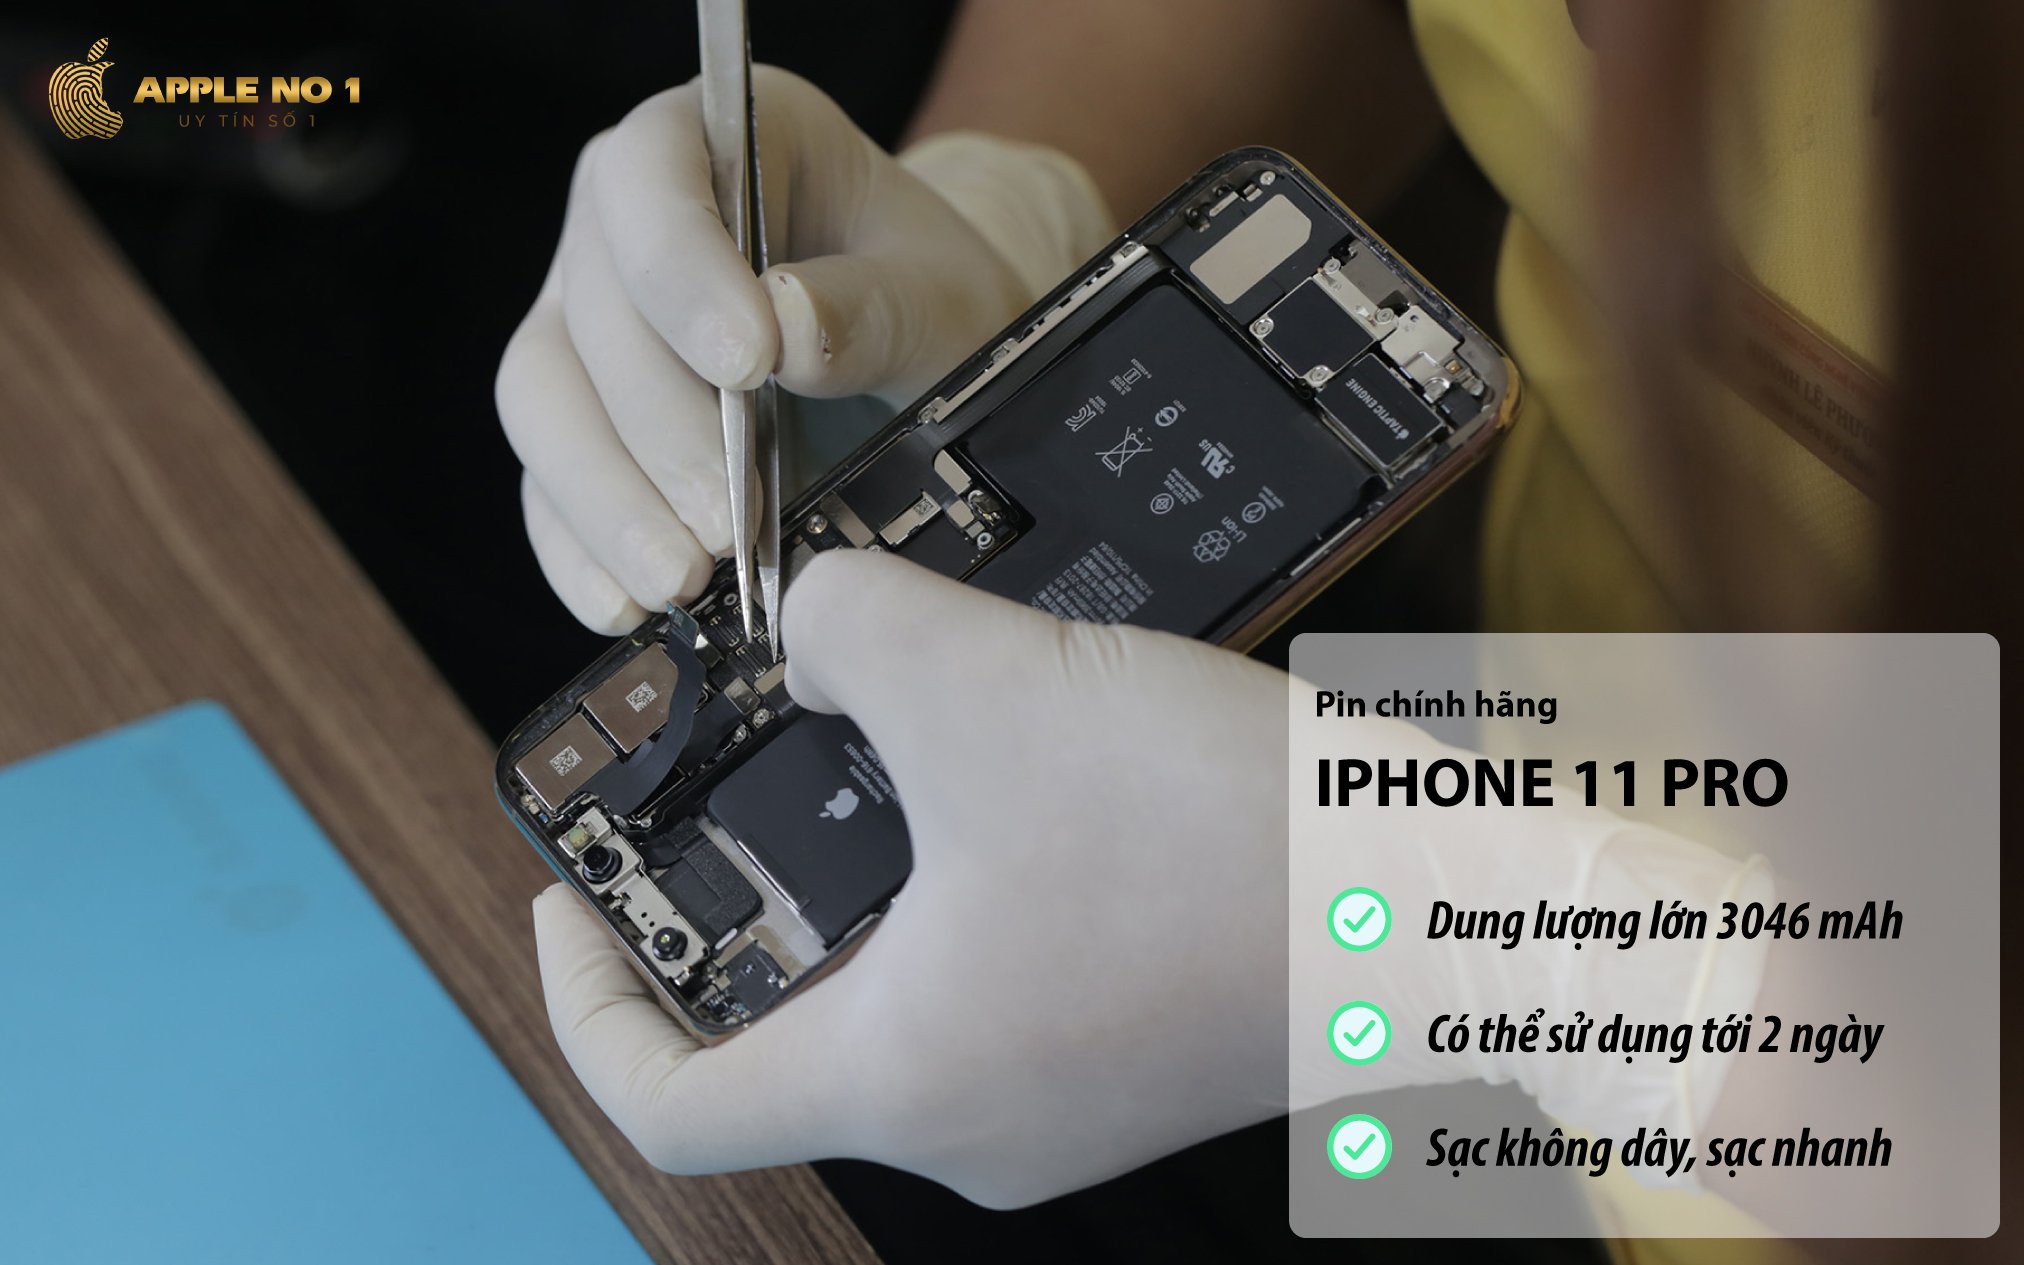 Dung lượng pin 3046 mAh cho phép iPhone 11 Pro sử dụng đến 2 ngày